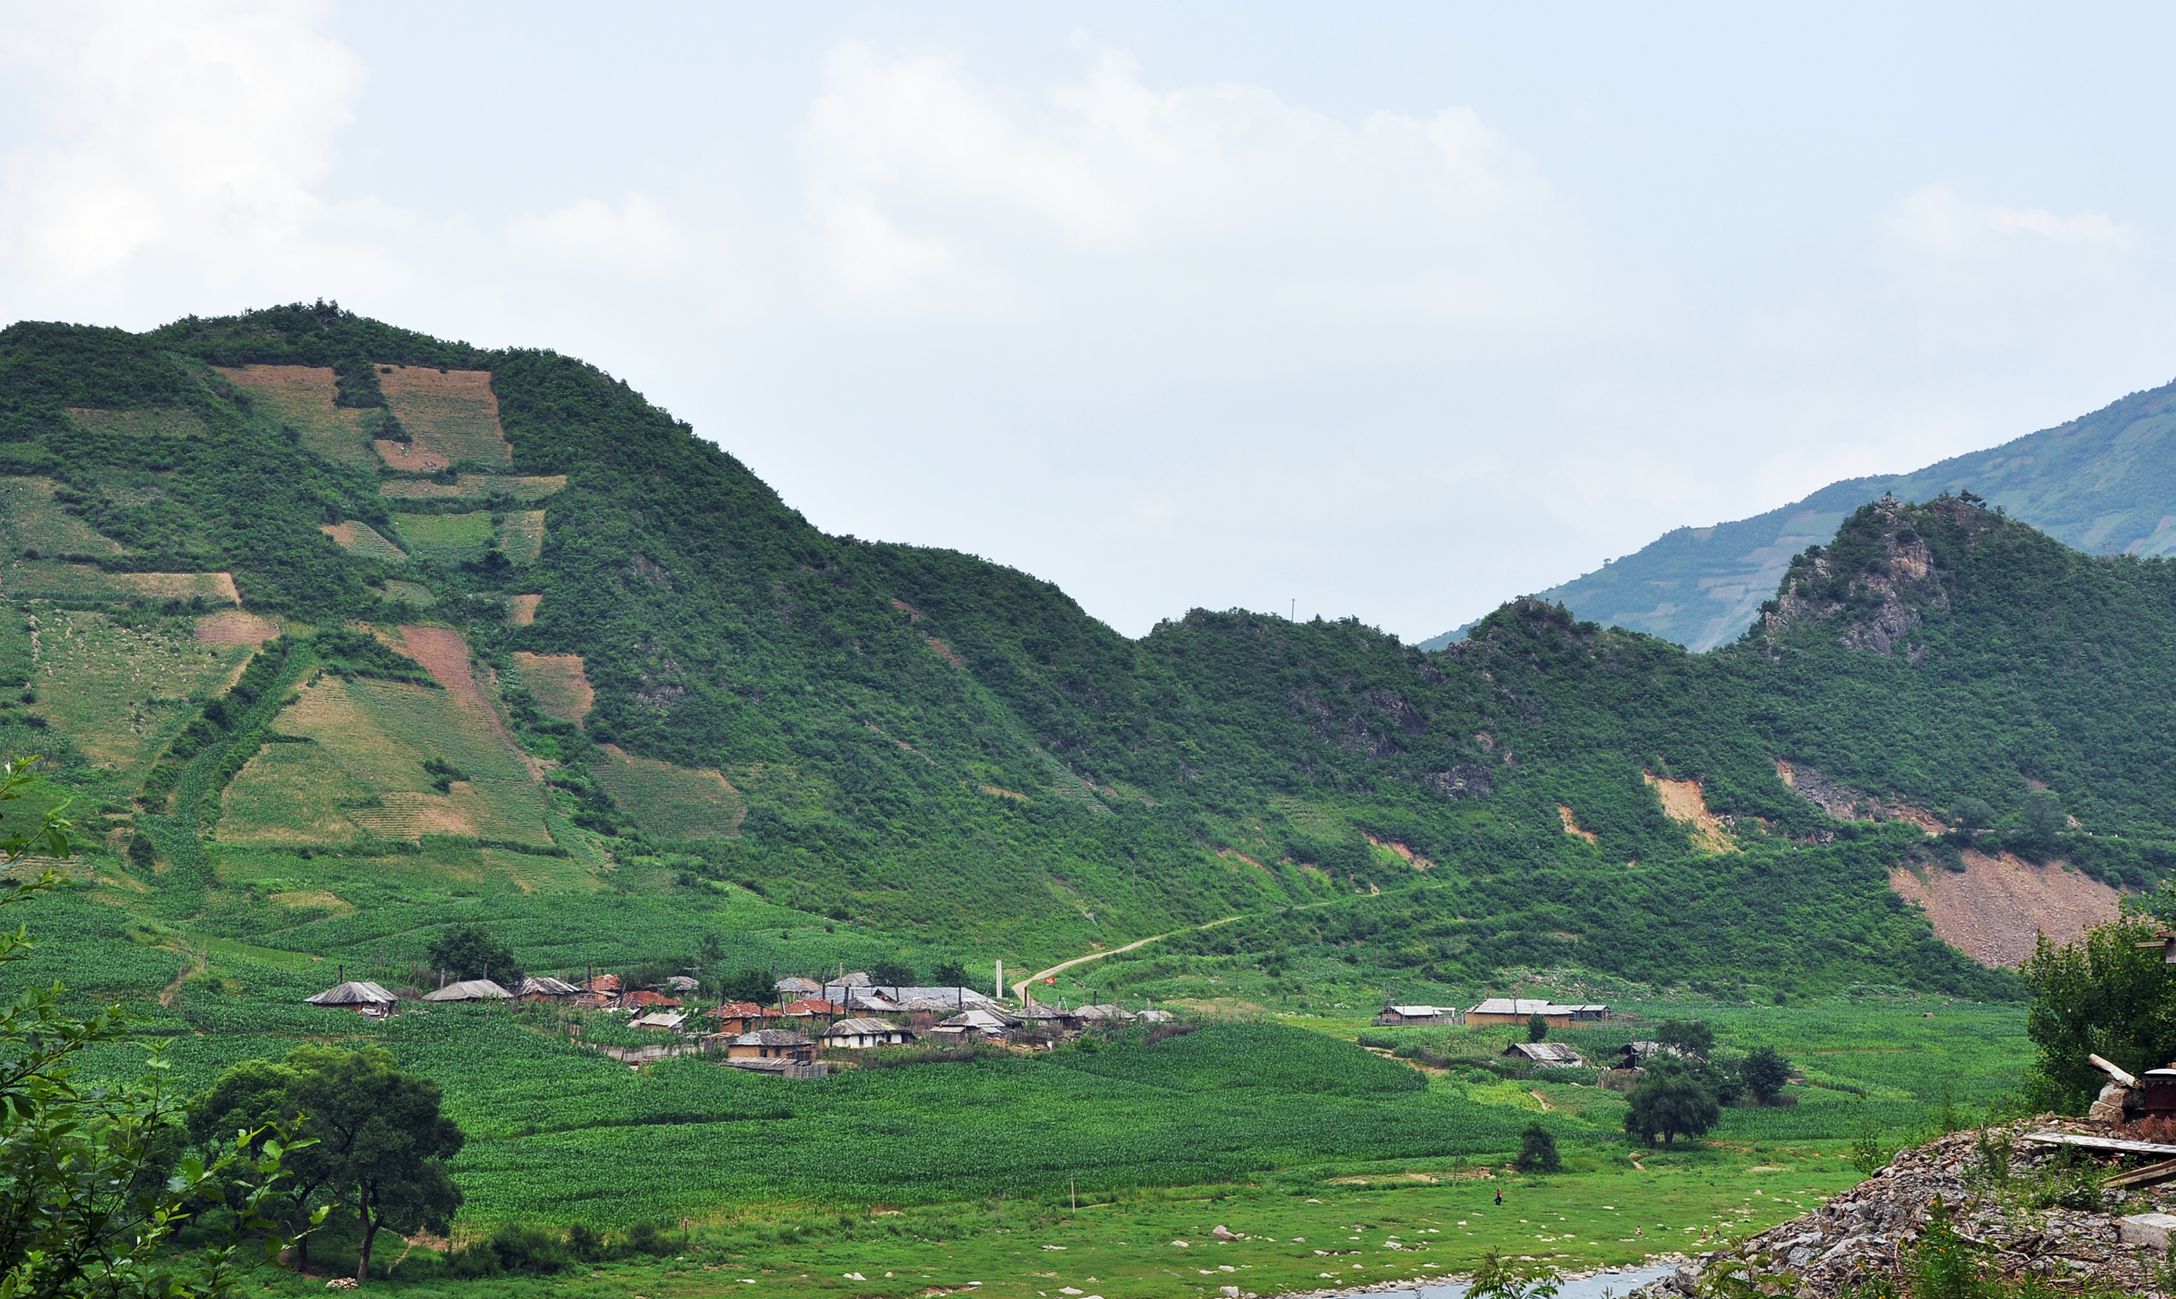 图为朝鲜乡村风貌,一座村庄坐落在山脚下,山脚和山坡上都种满了农作物